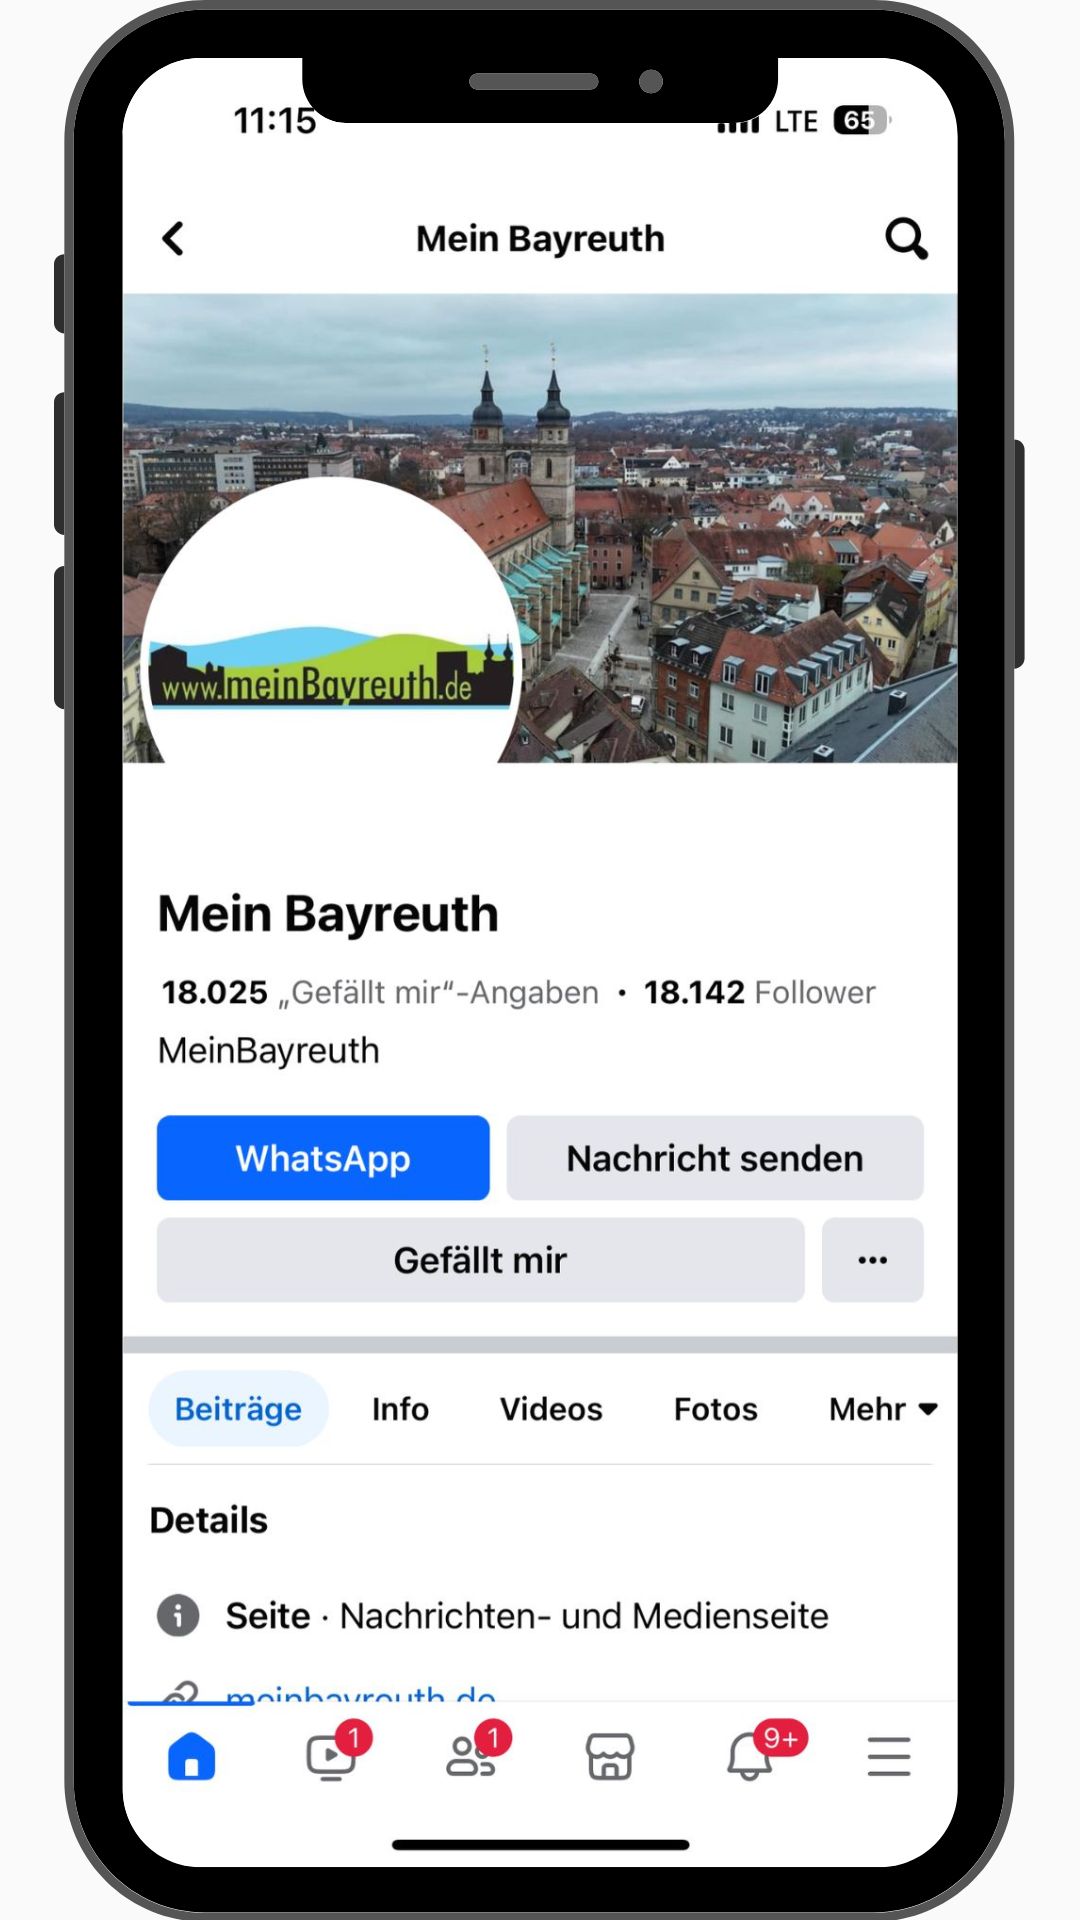 Handy mit Facebook Mein Bayreuth Account